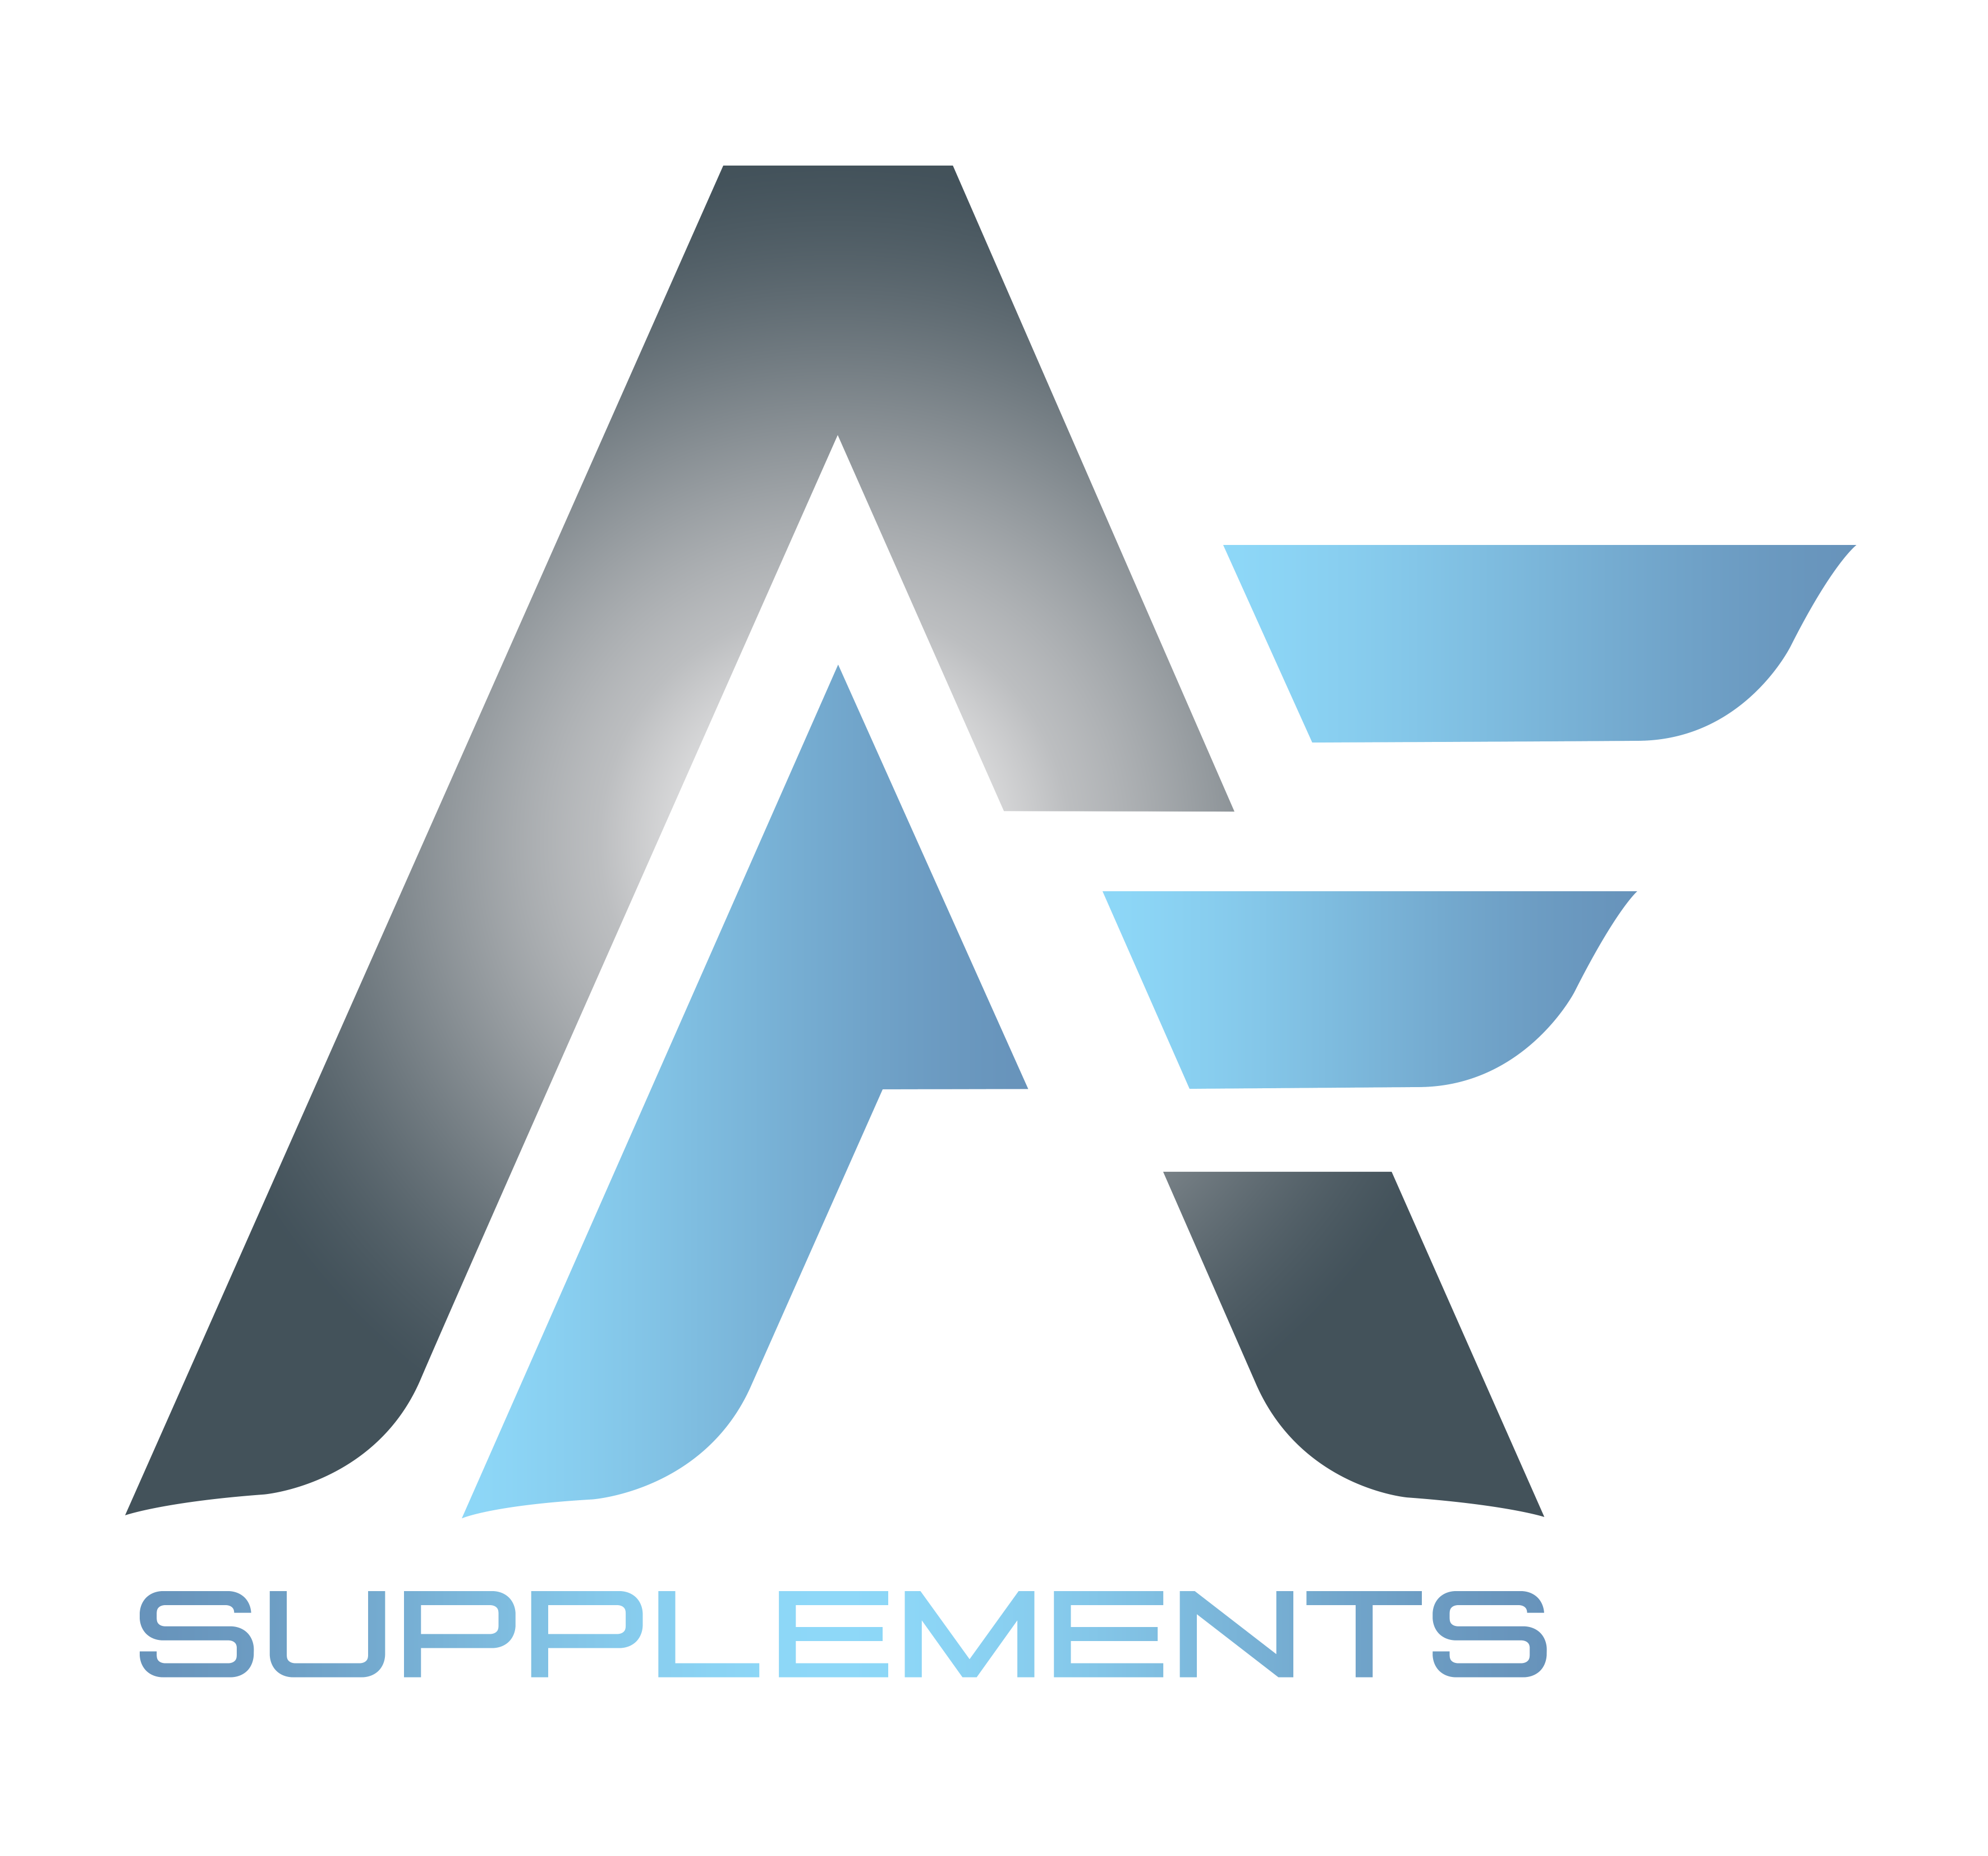 AF supplements